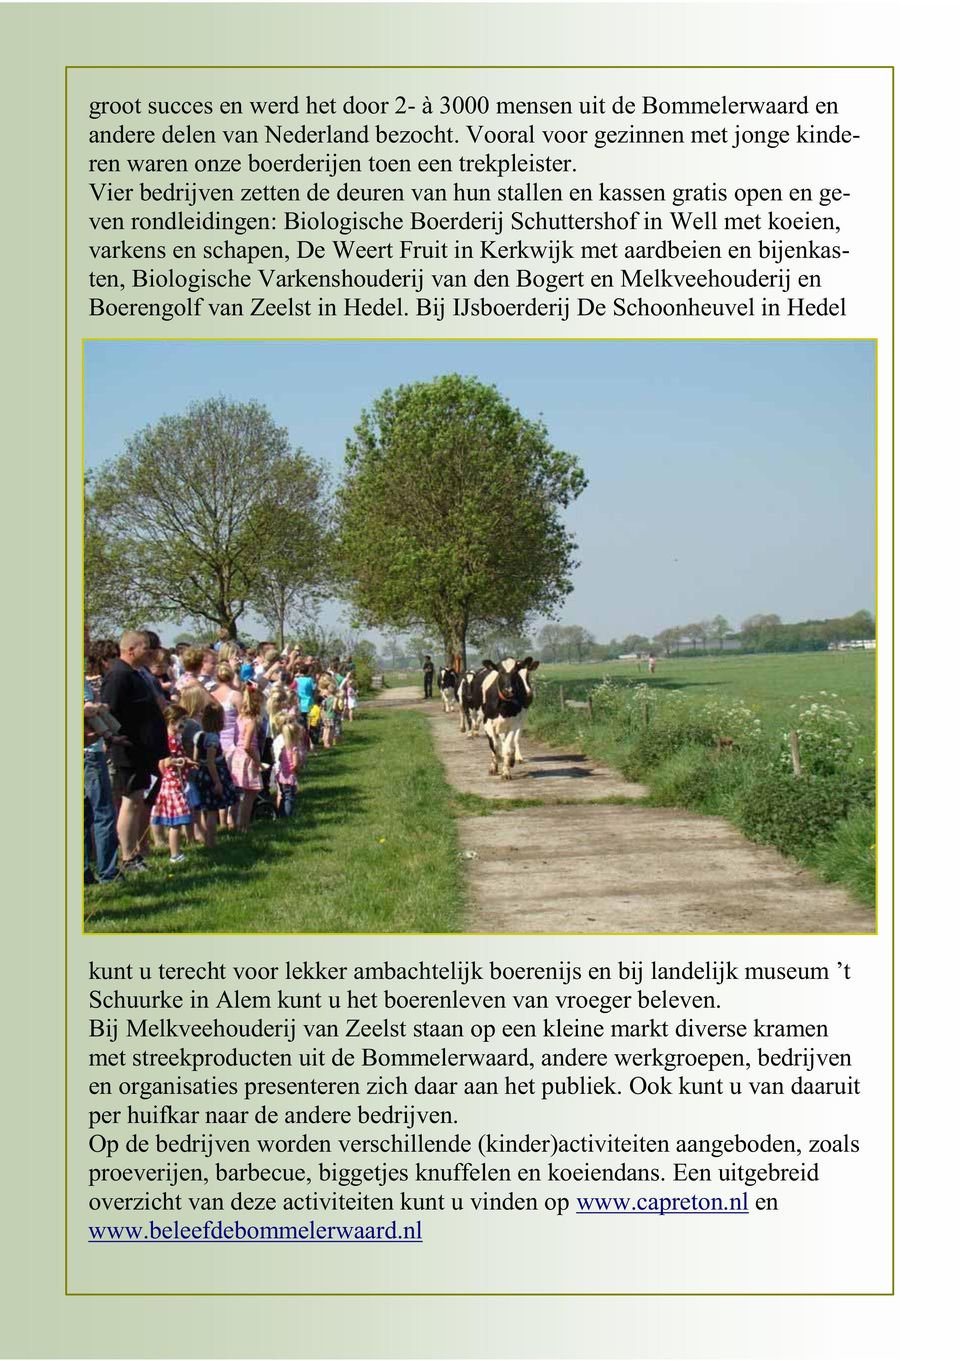 aardbeien en bijenkasten, Biologische Varkenshouderij van den Bogert en Melkveehouderij en Boerengolf van Zeelst in Hedel.